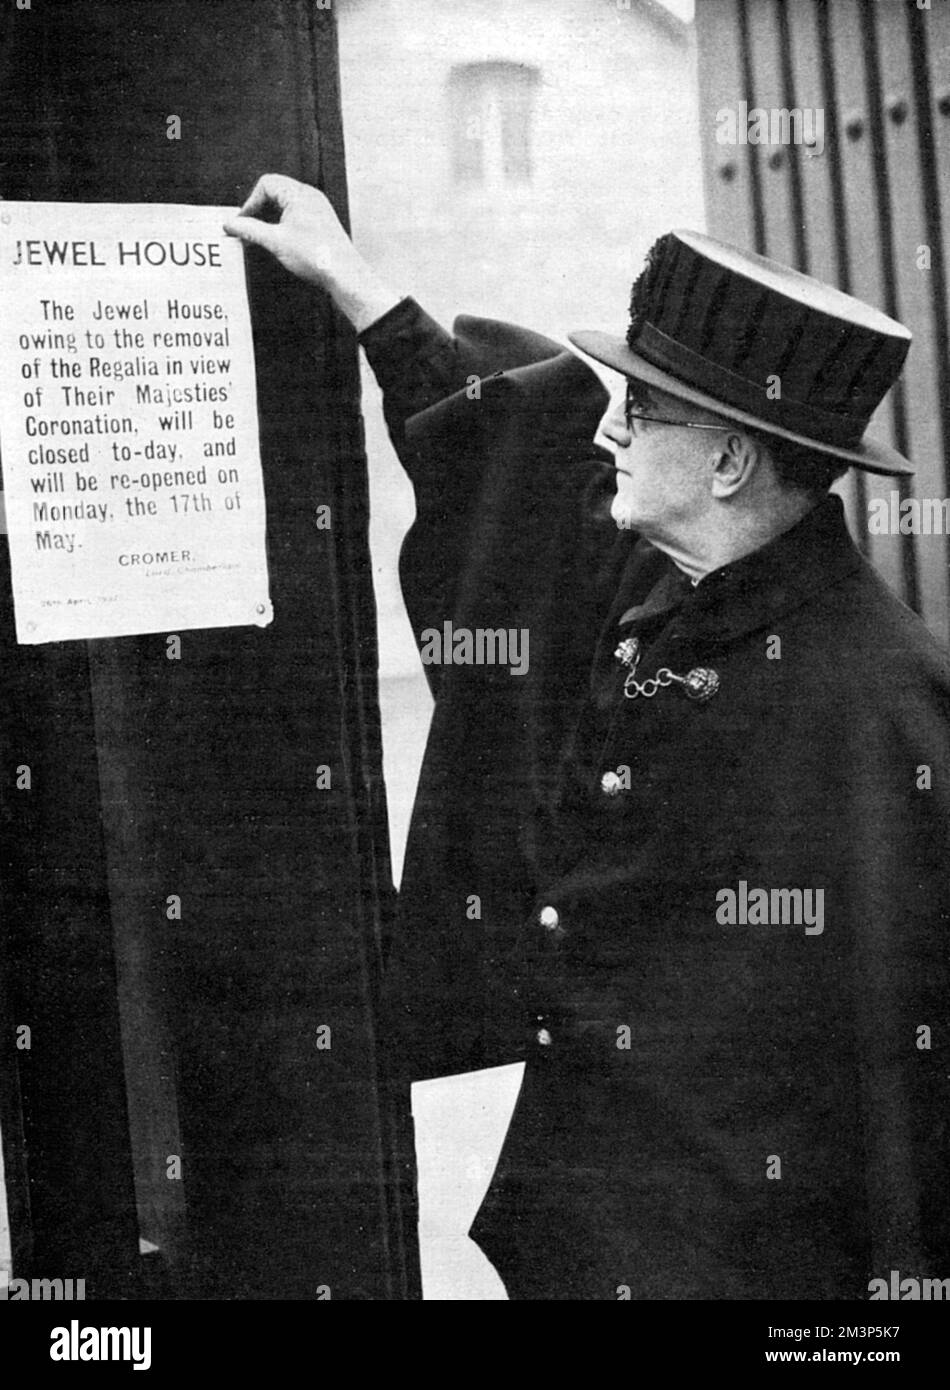 Un guerriero di Yeoman che rinuncerà alla nota del Signore Chamberlain sulla Wakefield Tower nella Tower of London, annunciando che a causa della rimozione della Regalia il luogo sarà chiuso fino al 17 maggio. Prima dell'incoronazione, i gioielli erano custoditi presso i gioiellieri di corte, Garrard, dove venivano rifatti. Data: 1937 Foto Stock